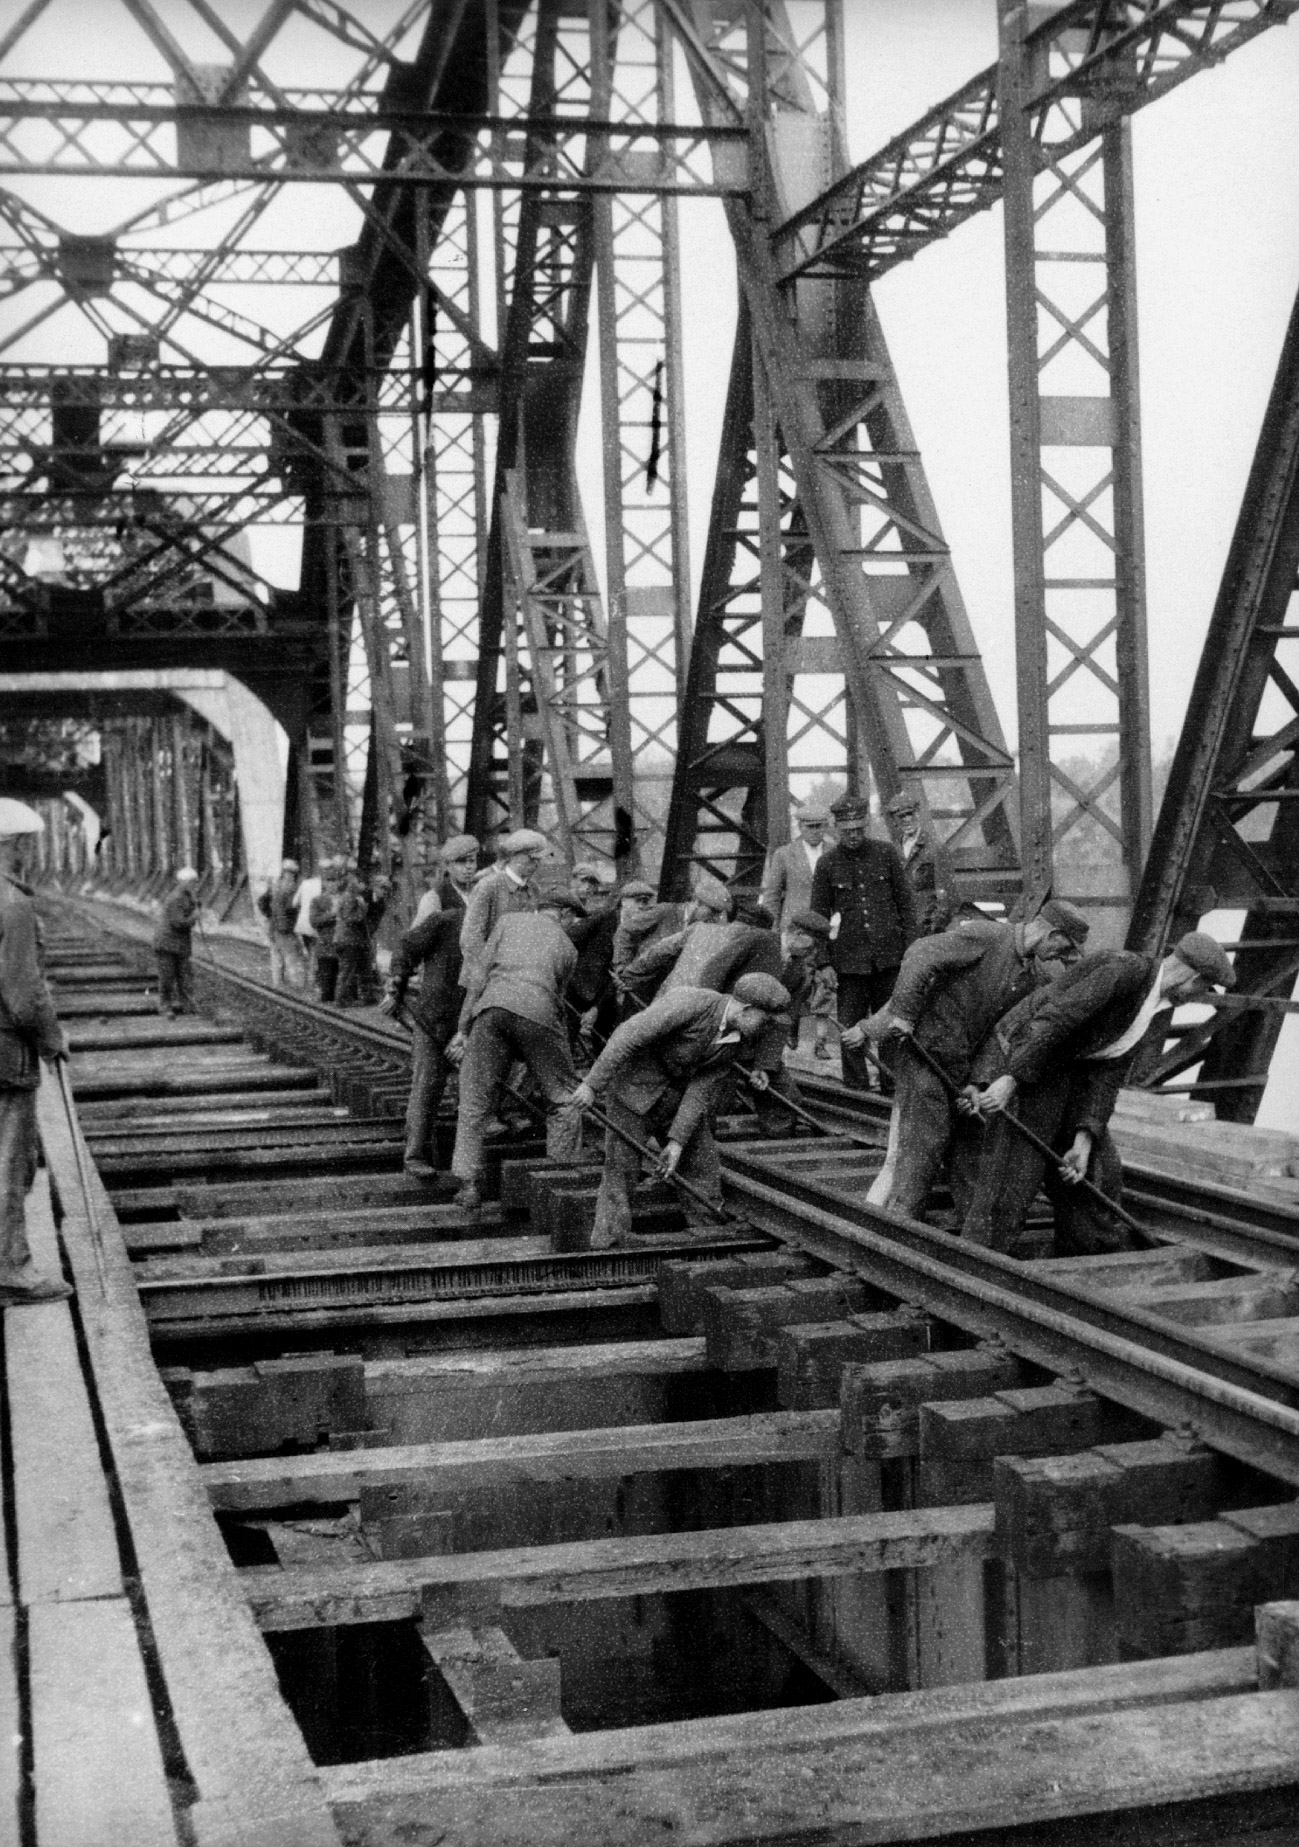 Naprawa torów na moście w Dęblinie - 1946 r. / The repair of railway tracks on the bridge in Dęblin - 1946